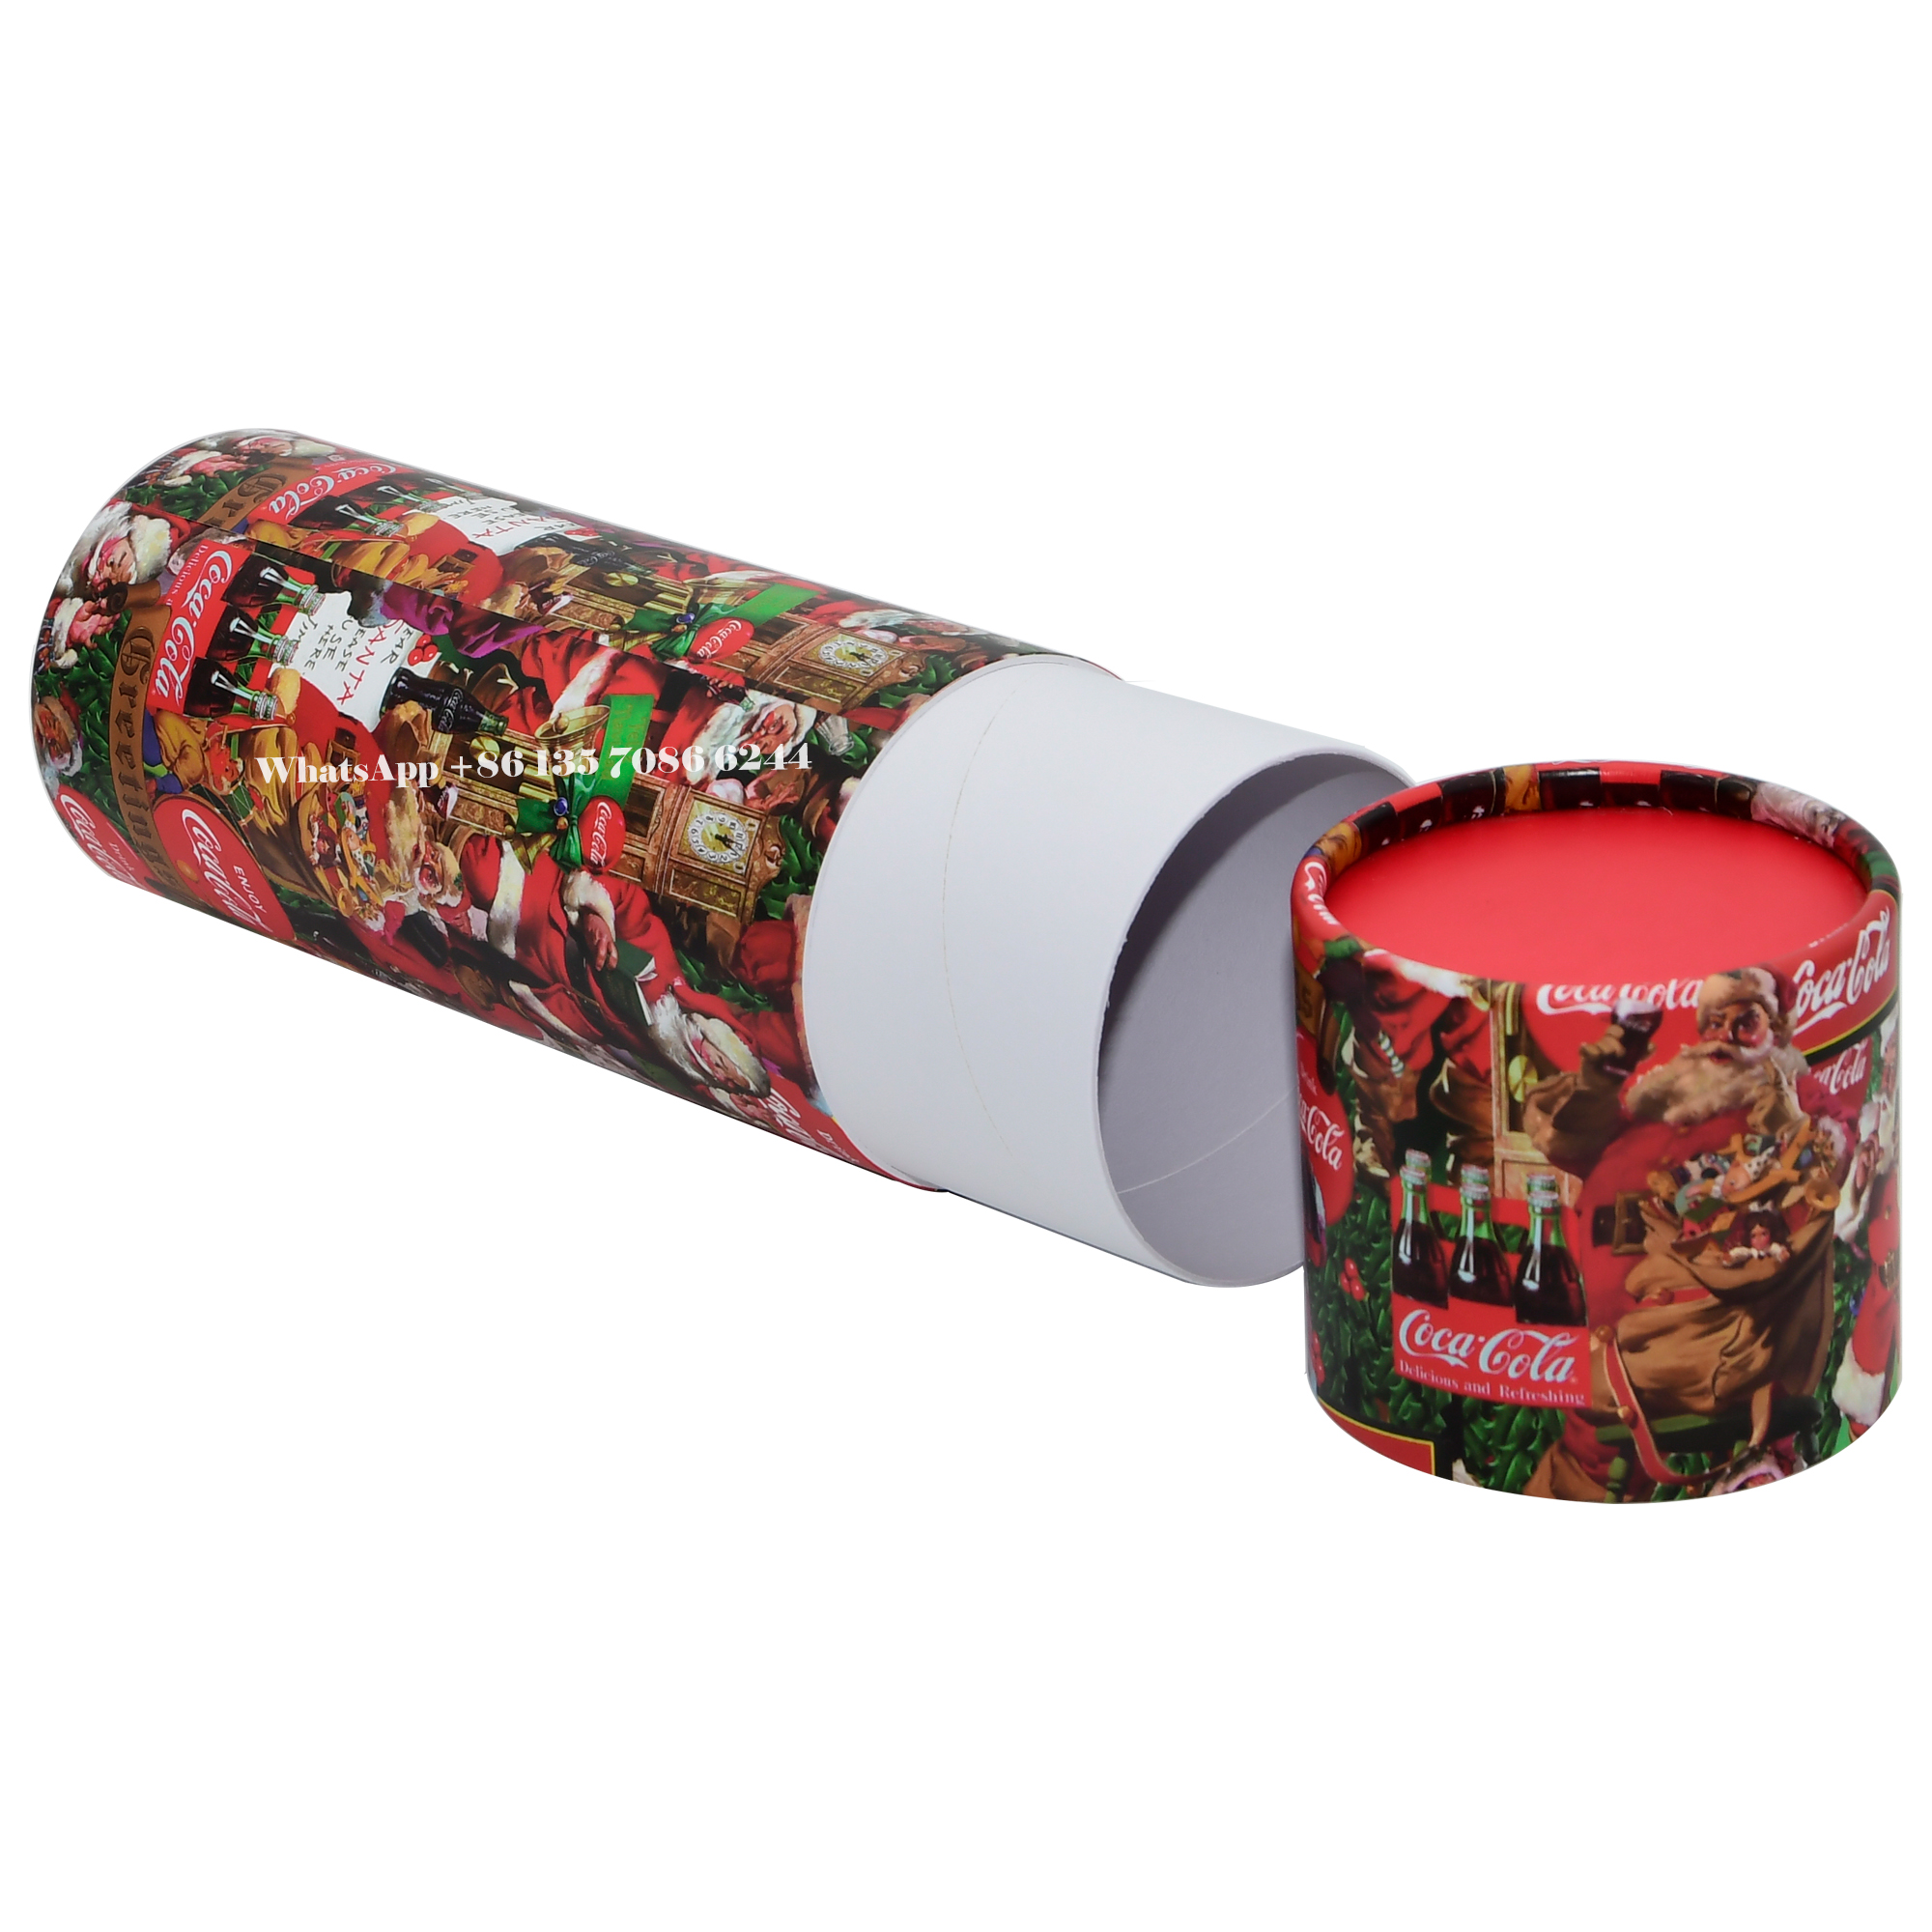  Caja de embalaje de tubo de papel Coca-Cola edición festiva de Navidad  